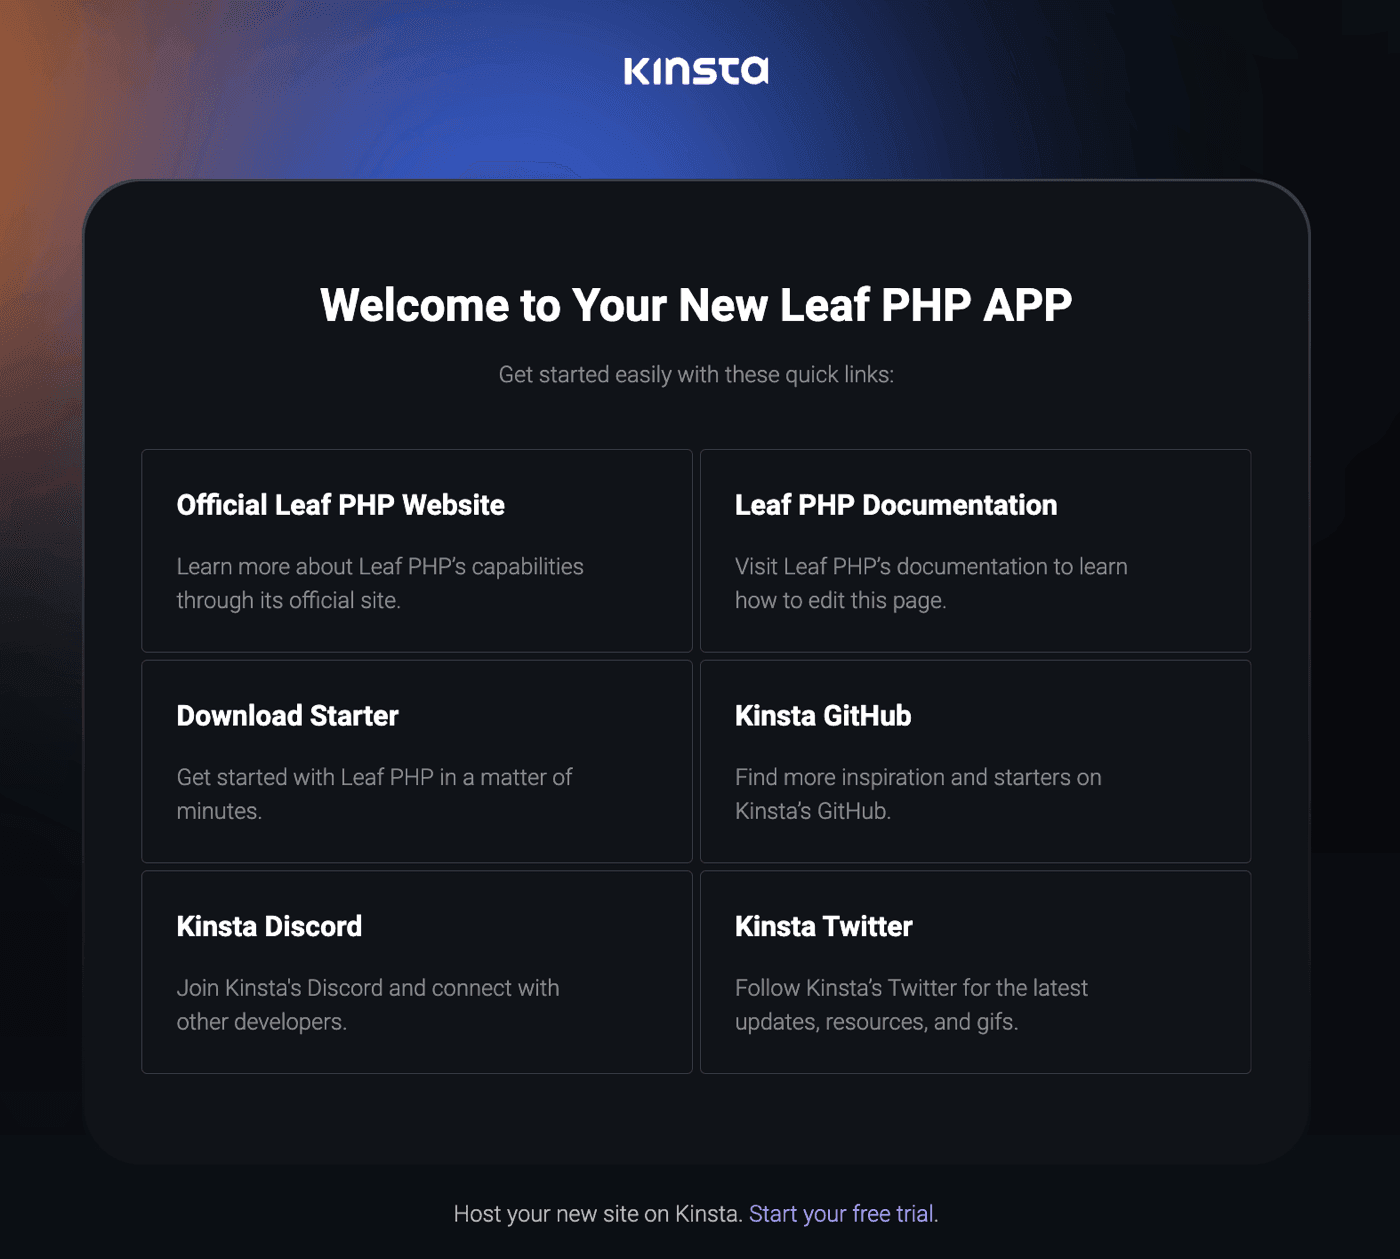 Página de boas-vindas da Kinsta após a instalação bem-sucedida do Leaf PHP.